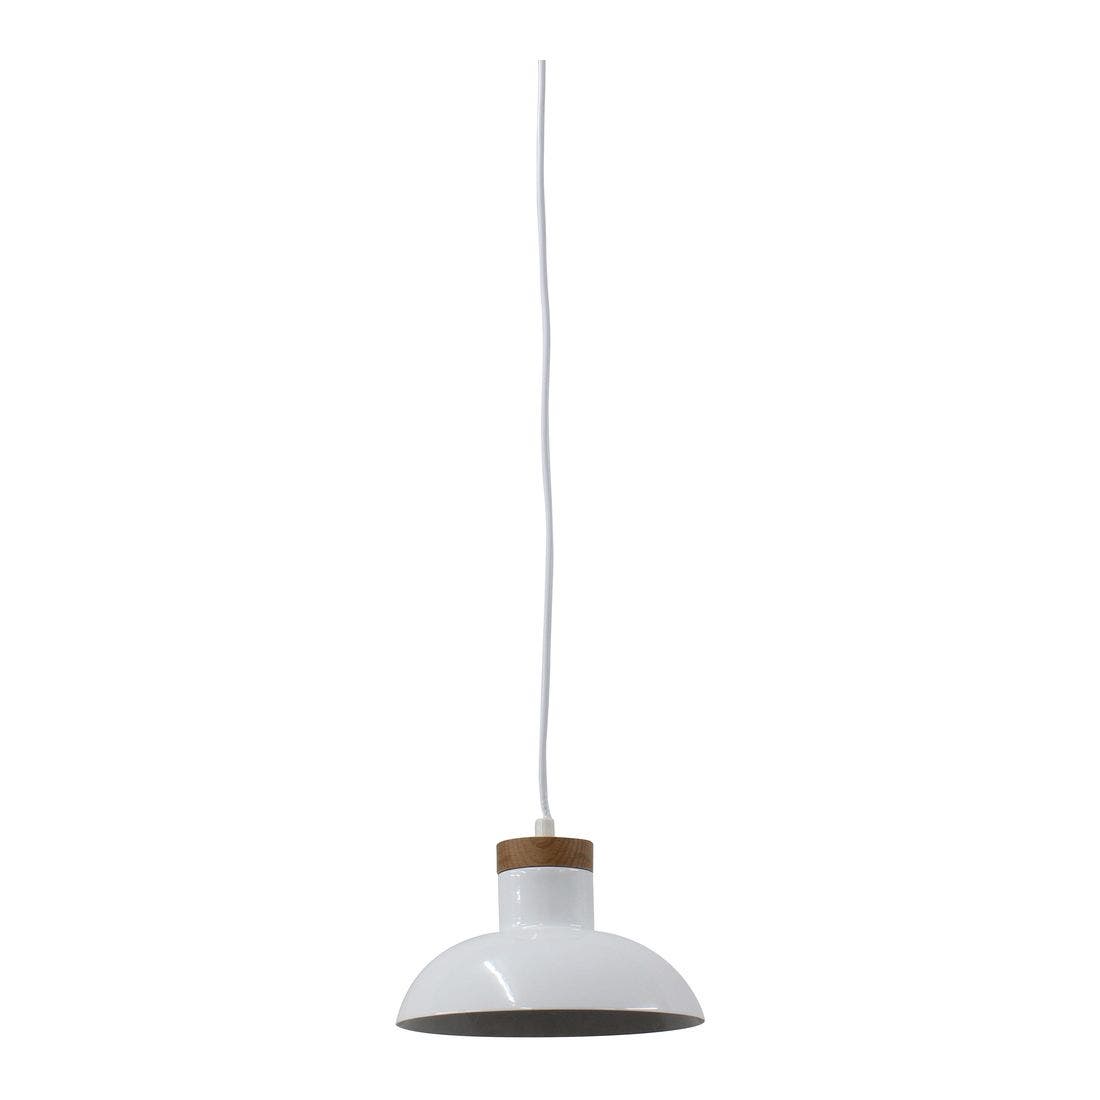 โคมไฟ โคมไฟแขวน รุ่น Modern สีสีขาว-SB Design Square